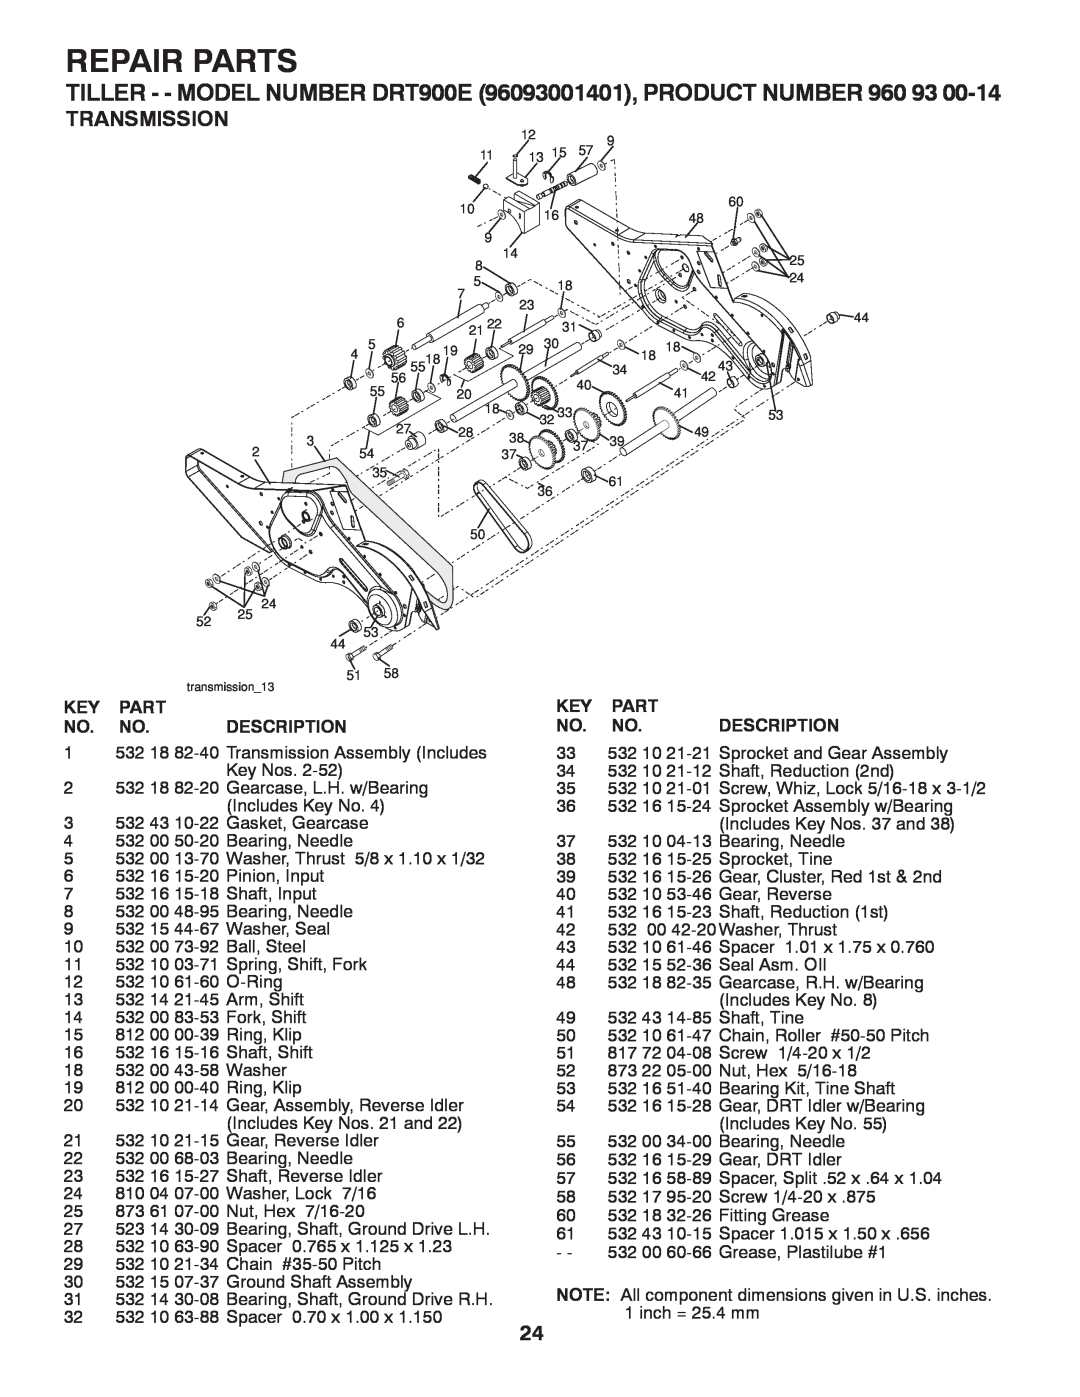 Husqvarna owner manual Repair Parts, TILLER - - MODEL NUMBER DRT900E 96093001401, PRODUCT NUMBER 960, Transmission 